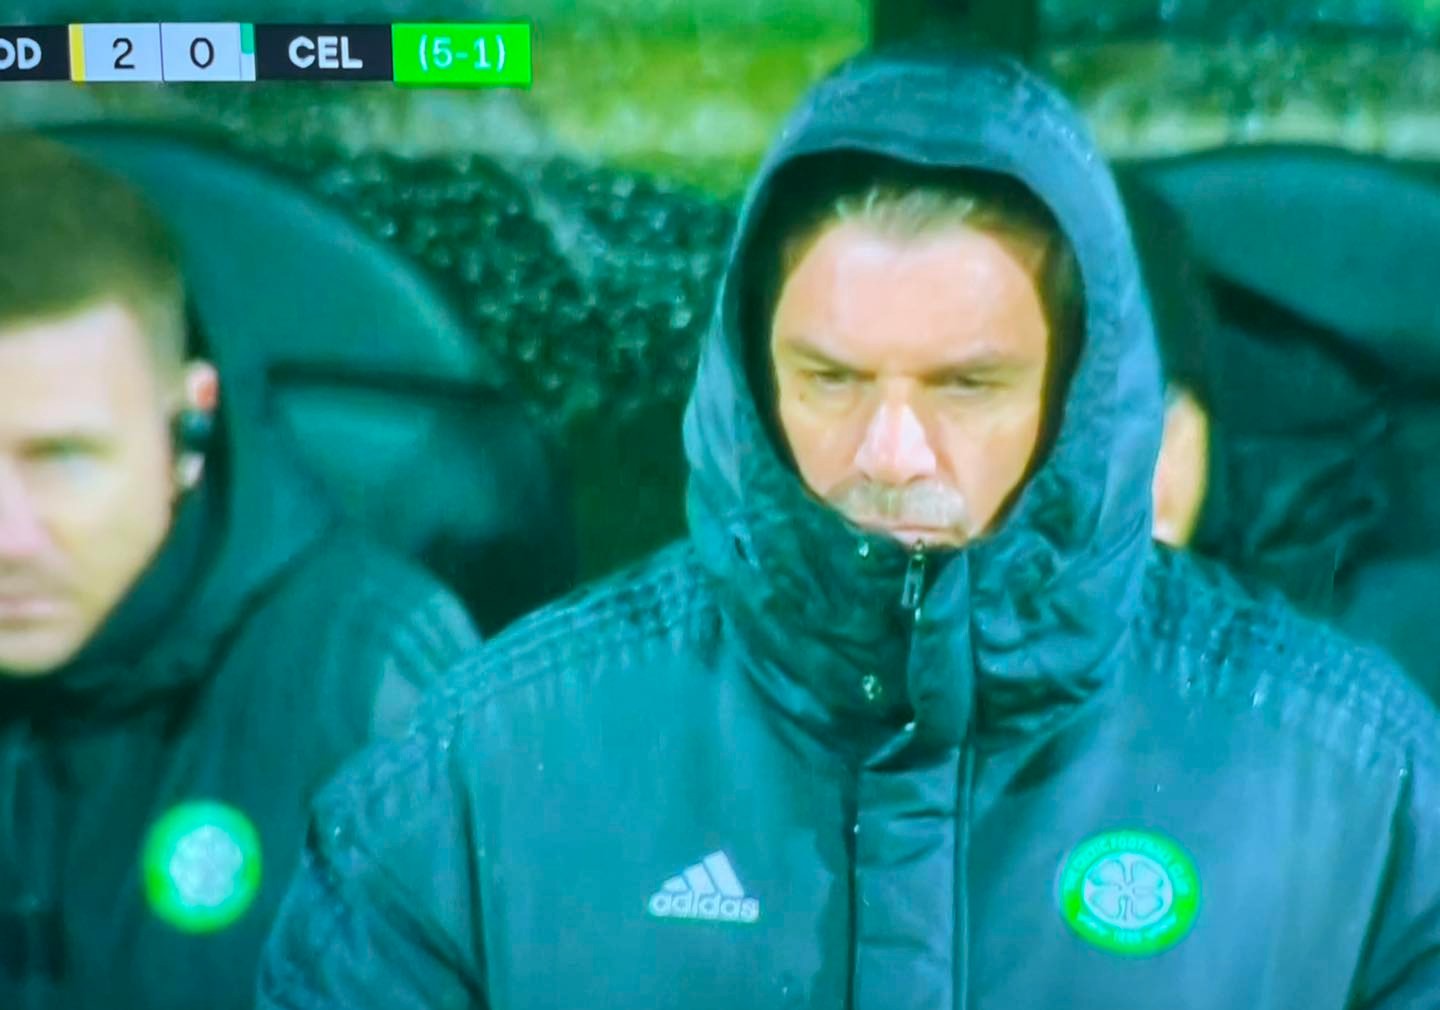 Celtic Rangers